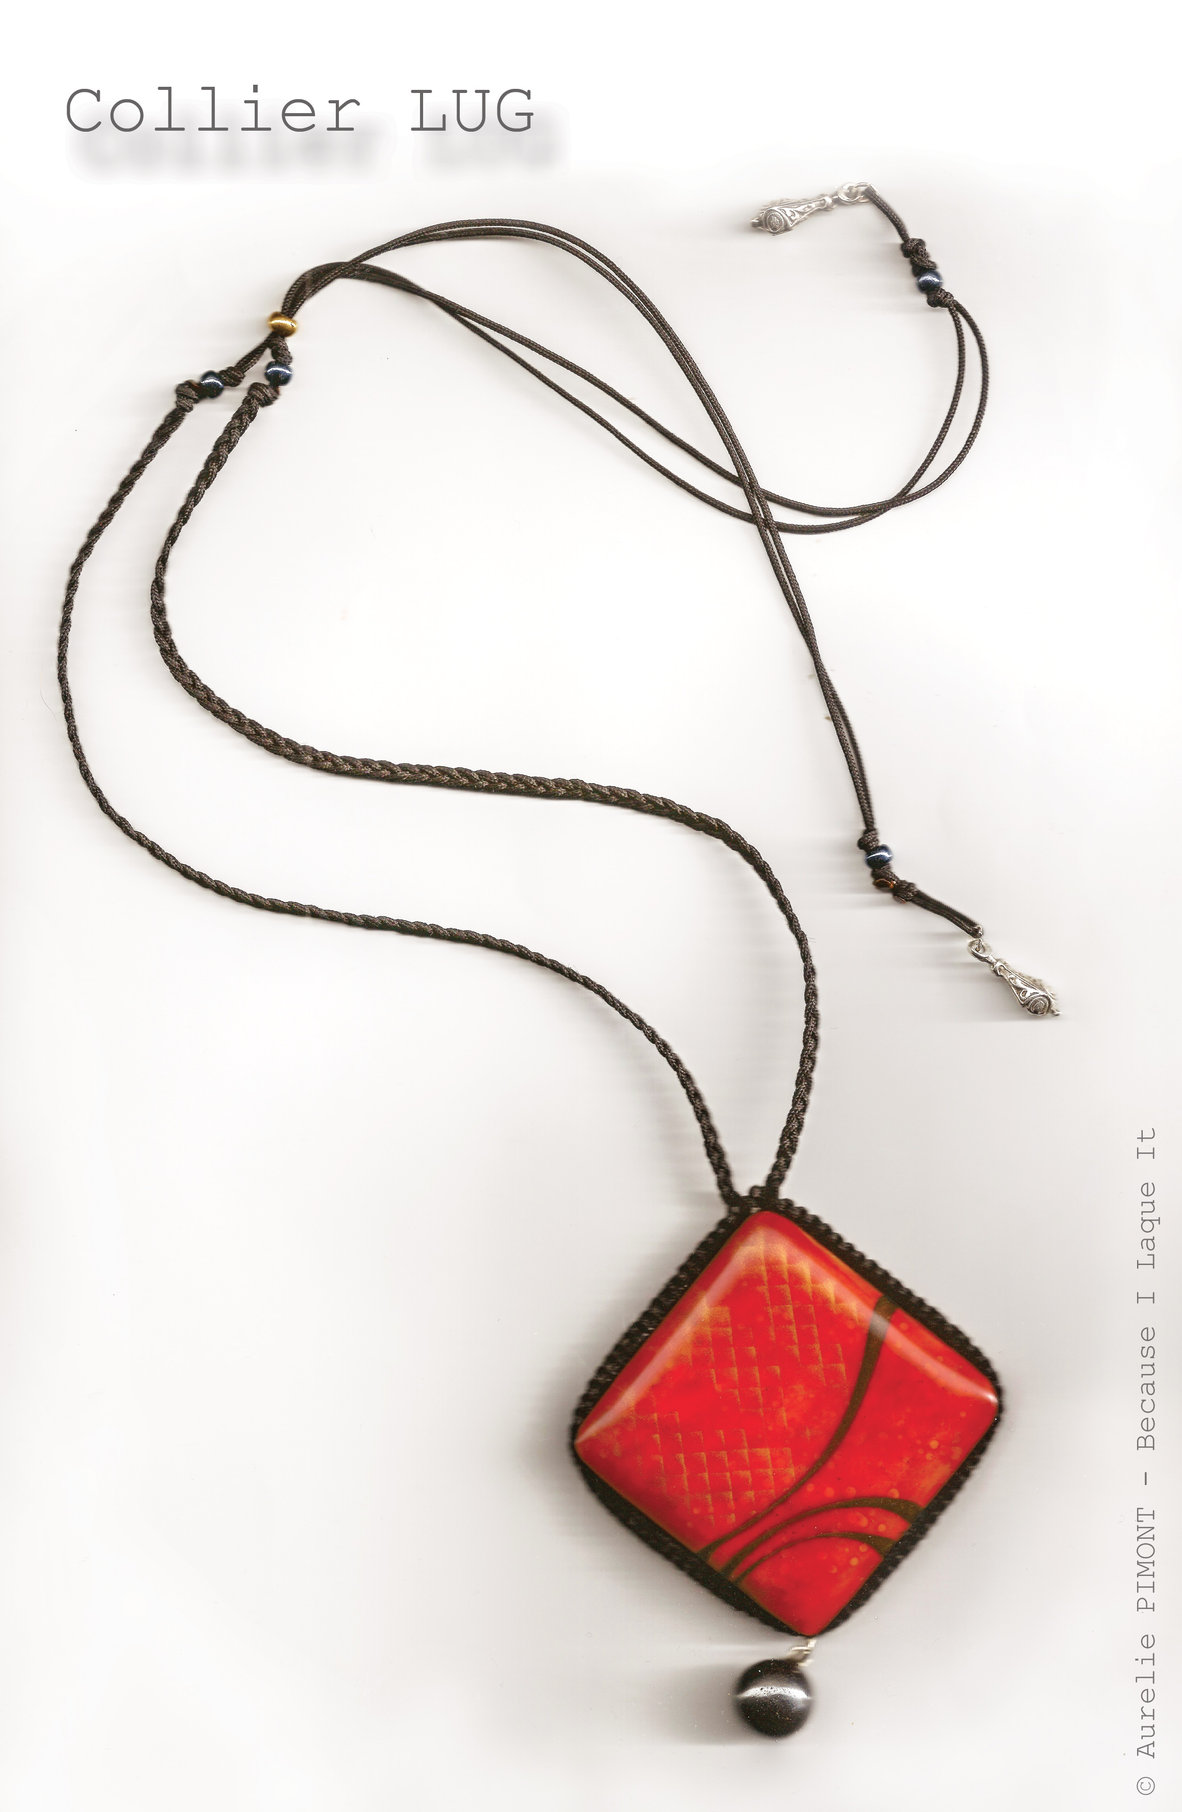 Collier LUG<br/><span>Dimensions du carré : 5X5
Longueur du collier réglable : collier classique ou sautoir
Perles en hématite</span>